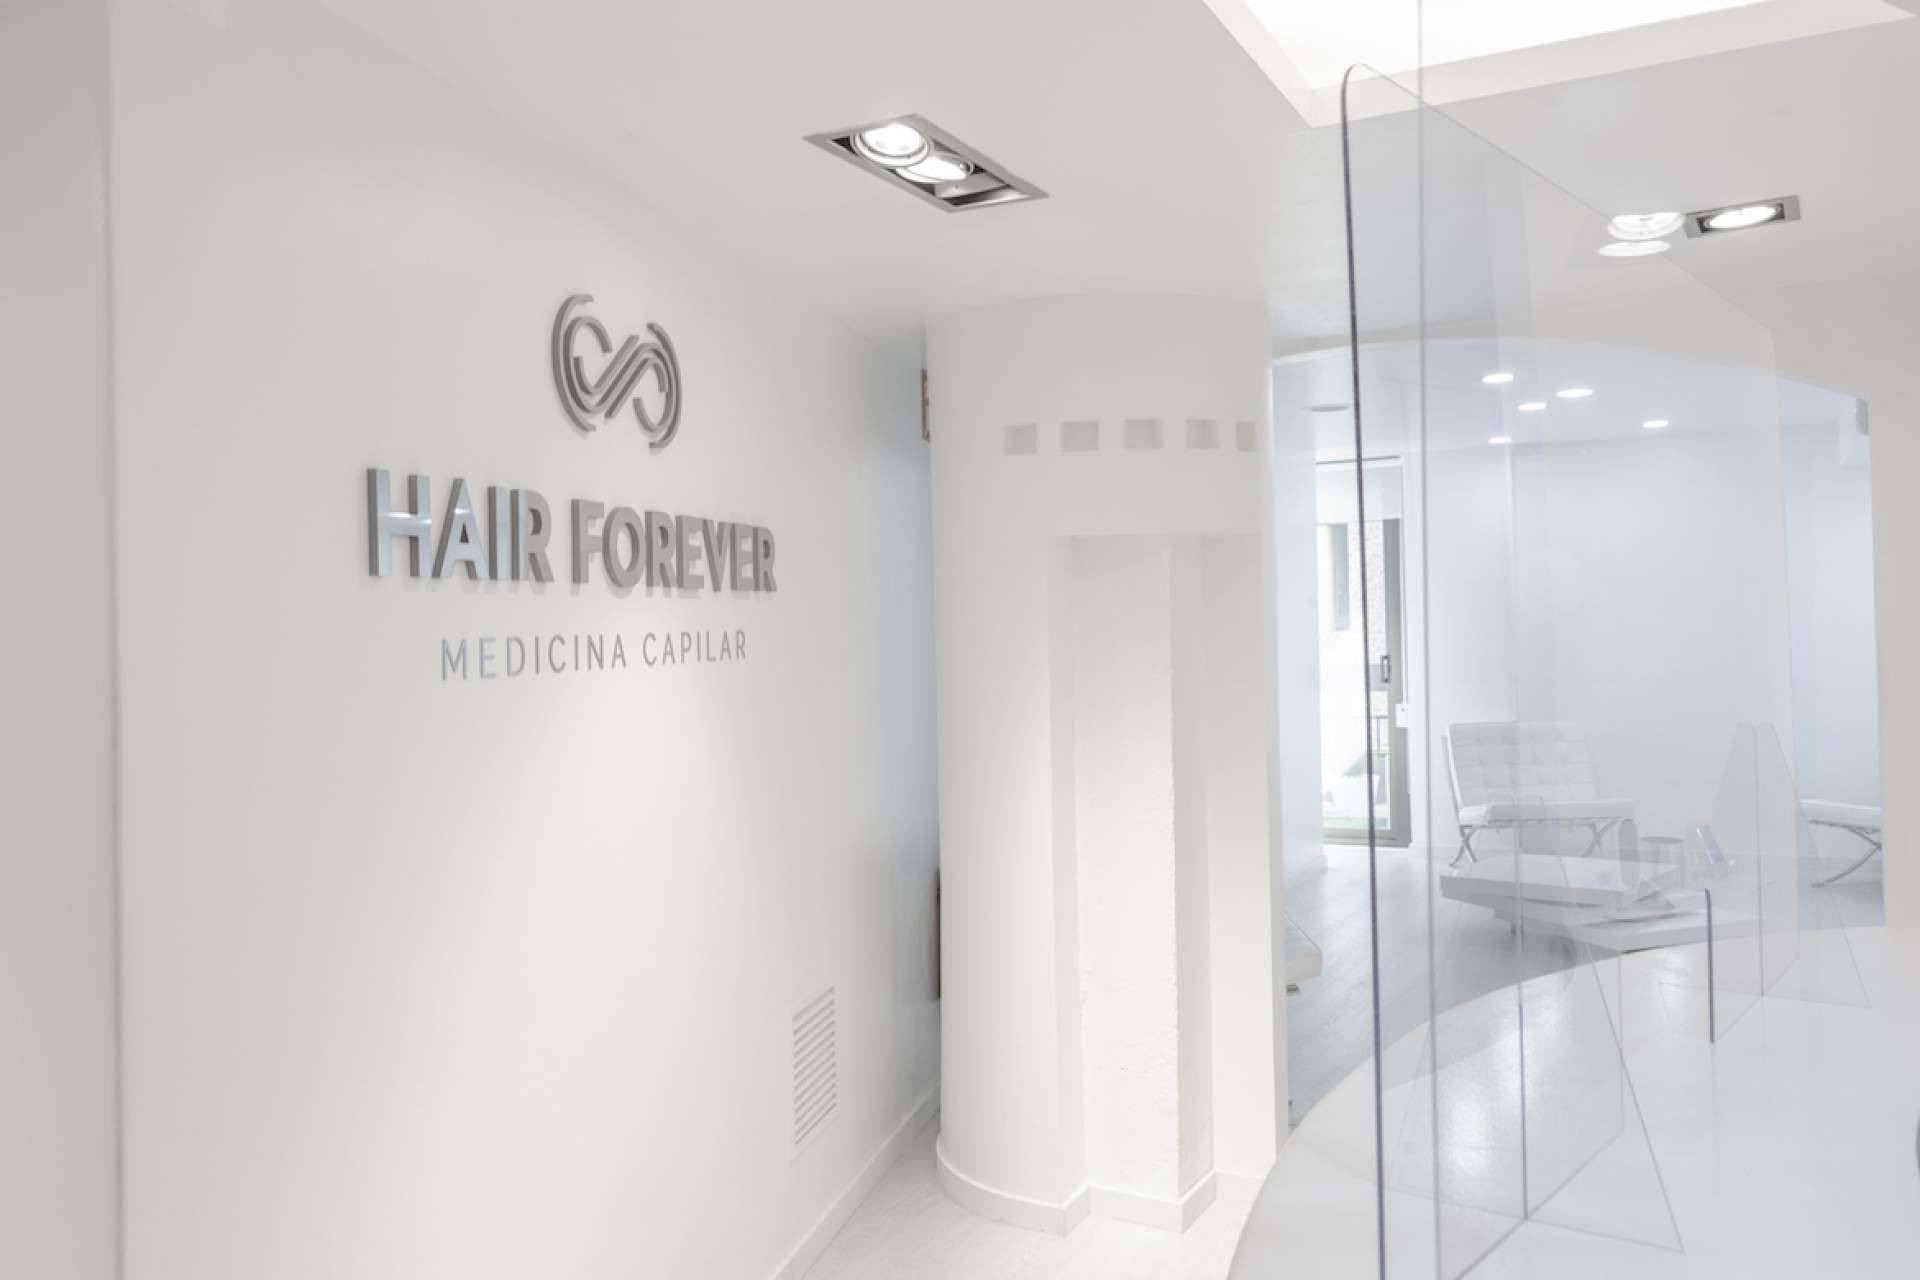  Hair Forever es una clínica capilar que ofrece sus servicios en Barcelona 